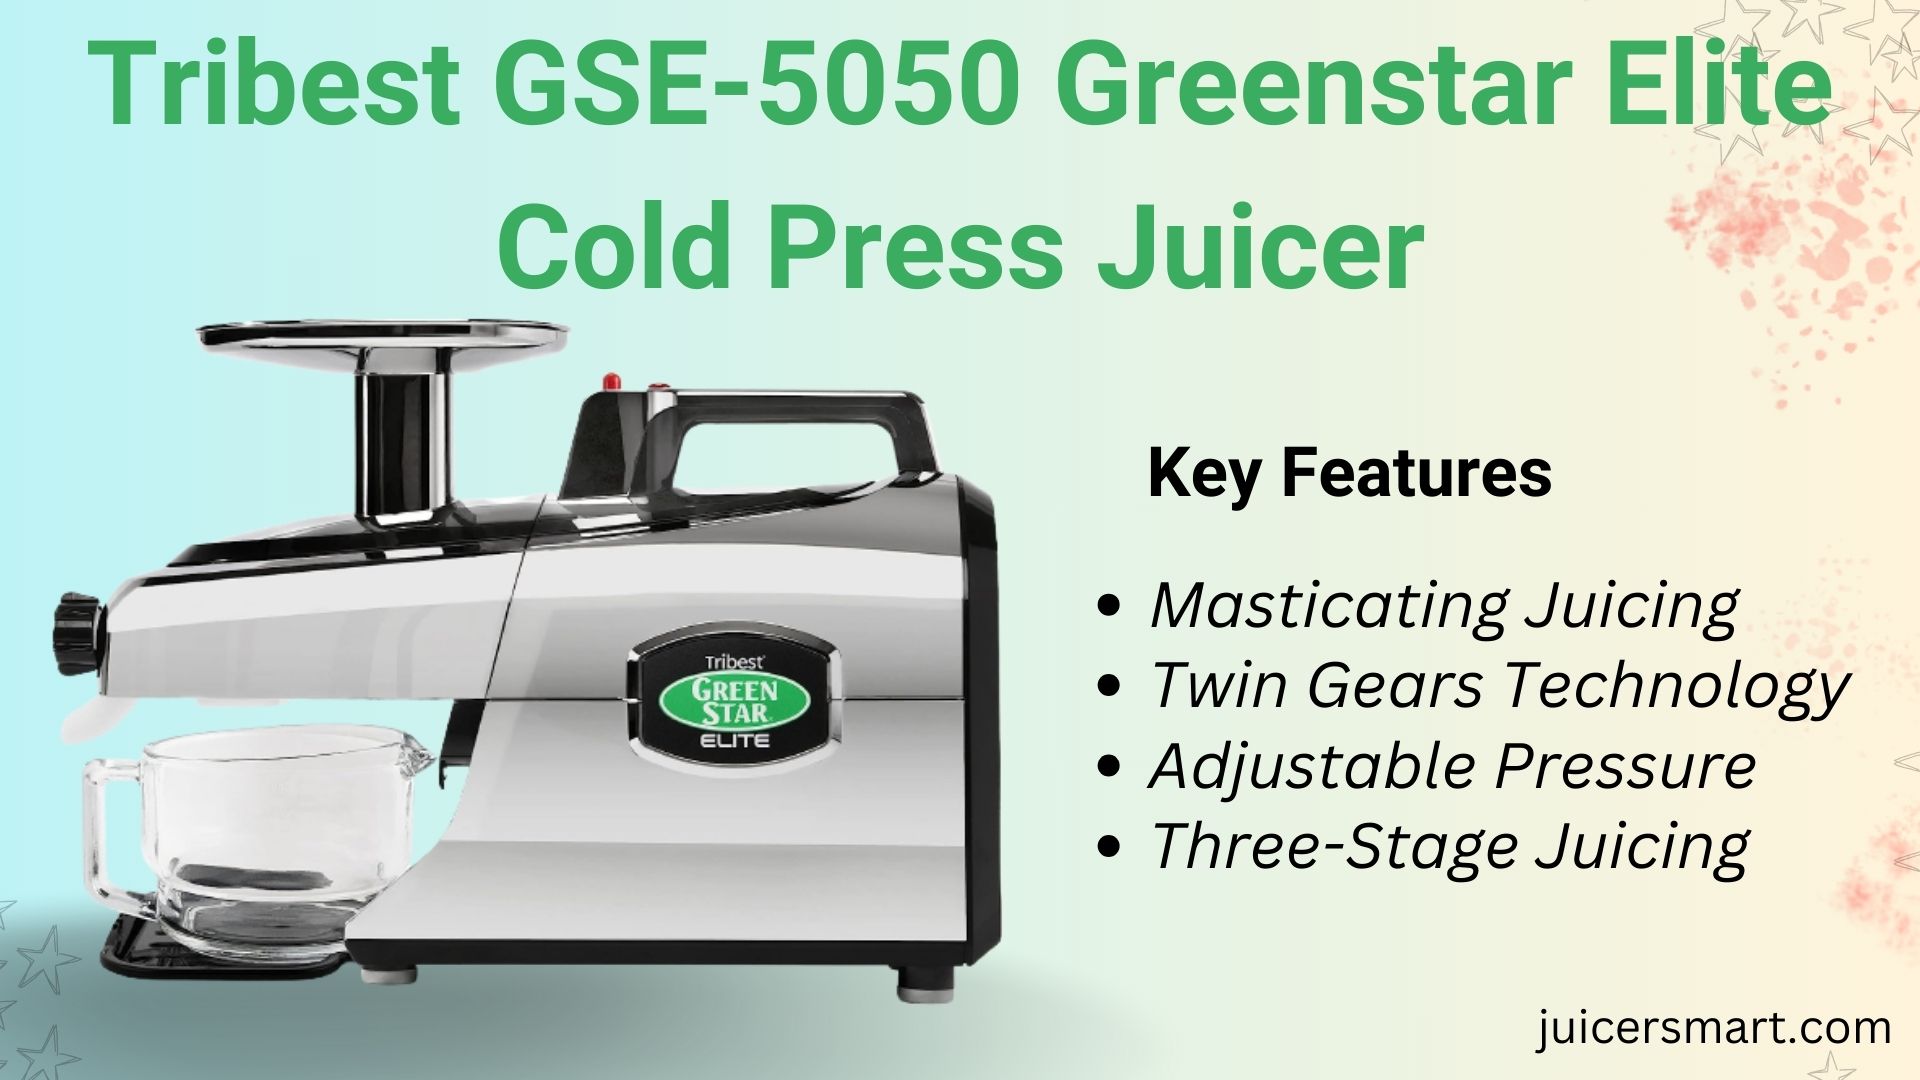 Tribest GSE-5050 Greenstar Elite Cold Press Juicer